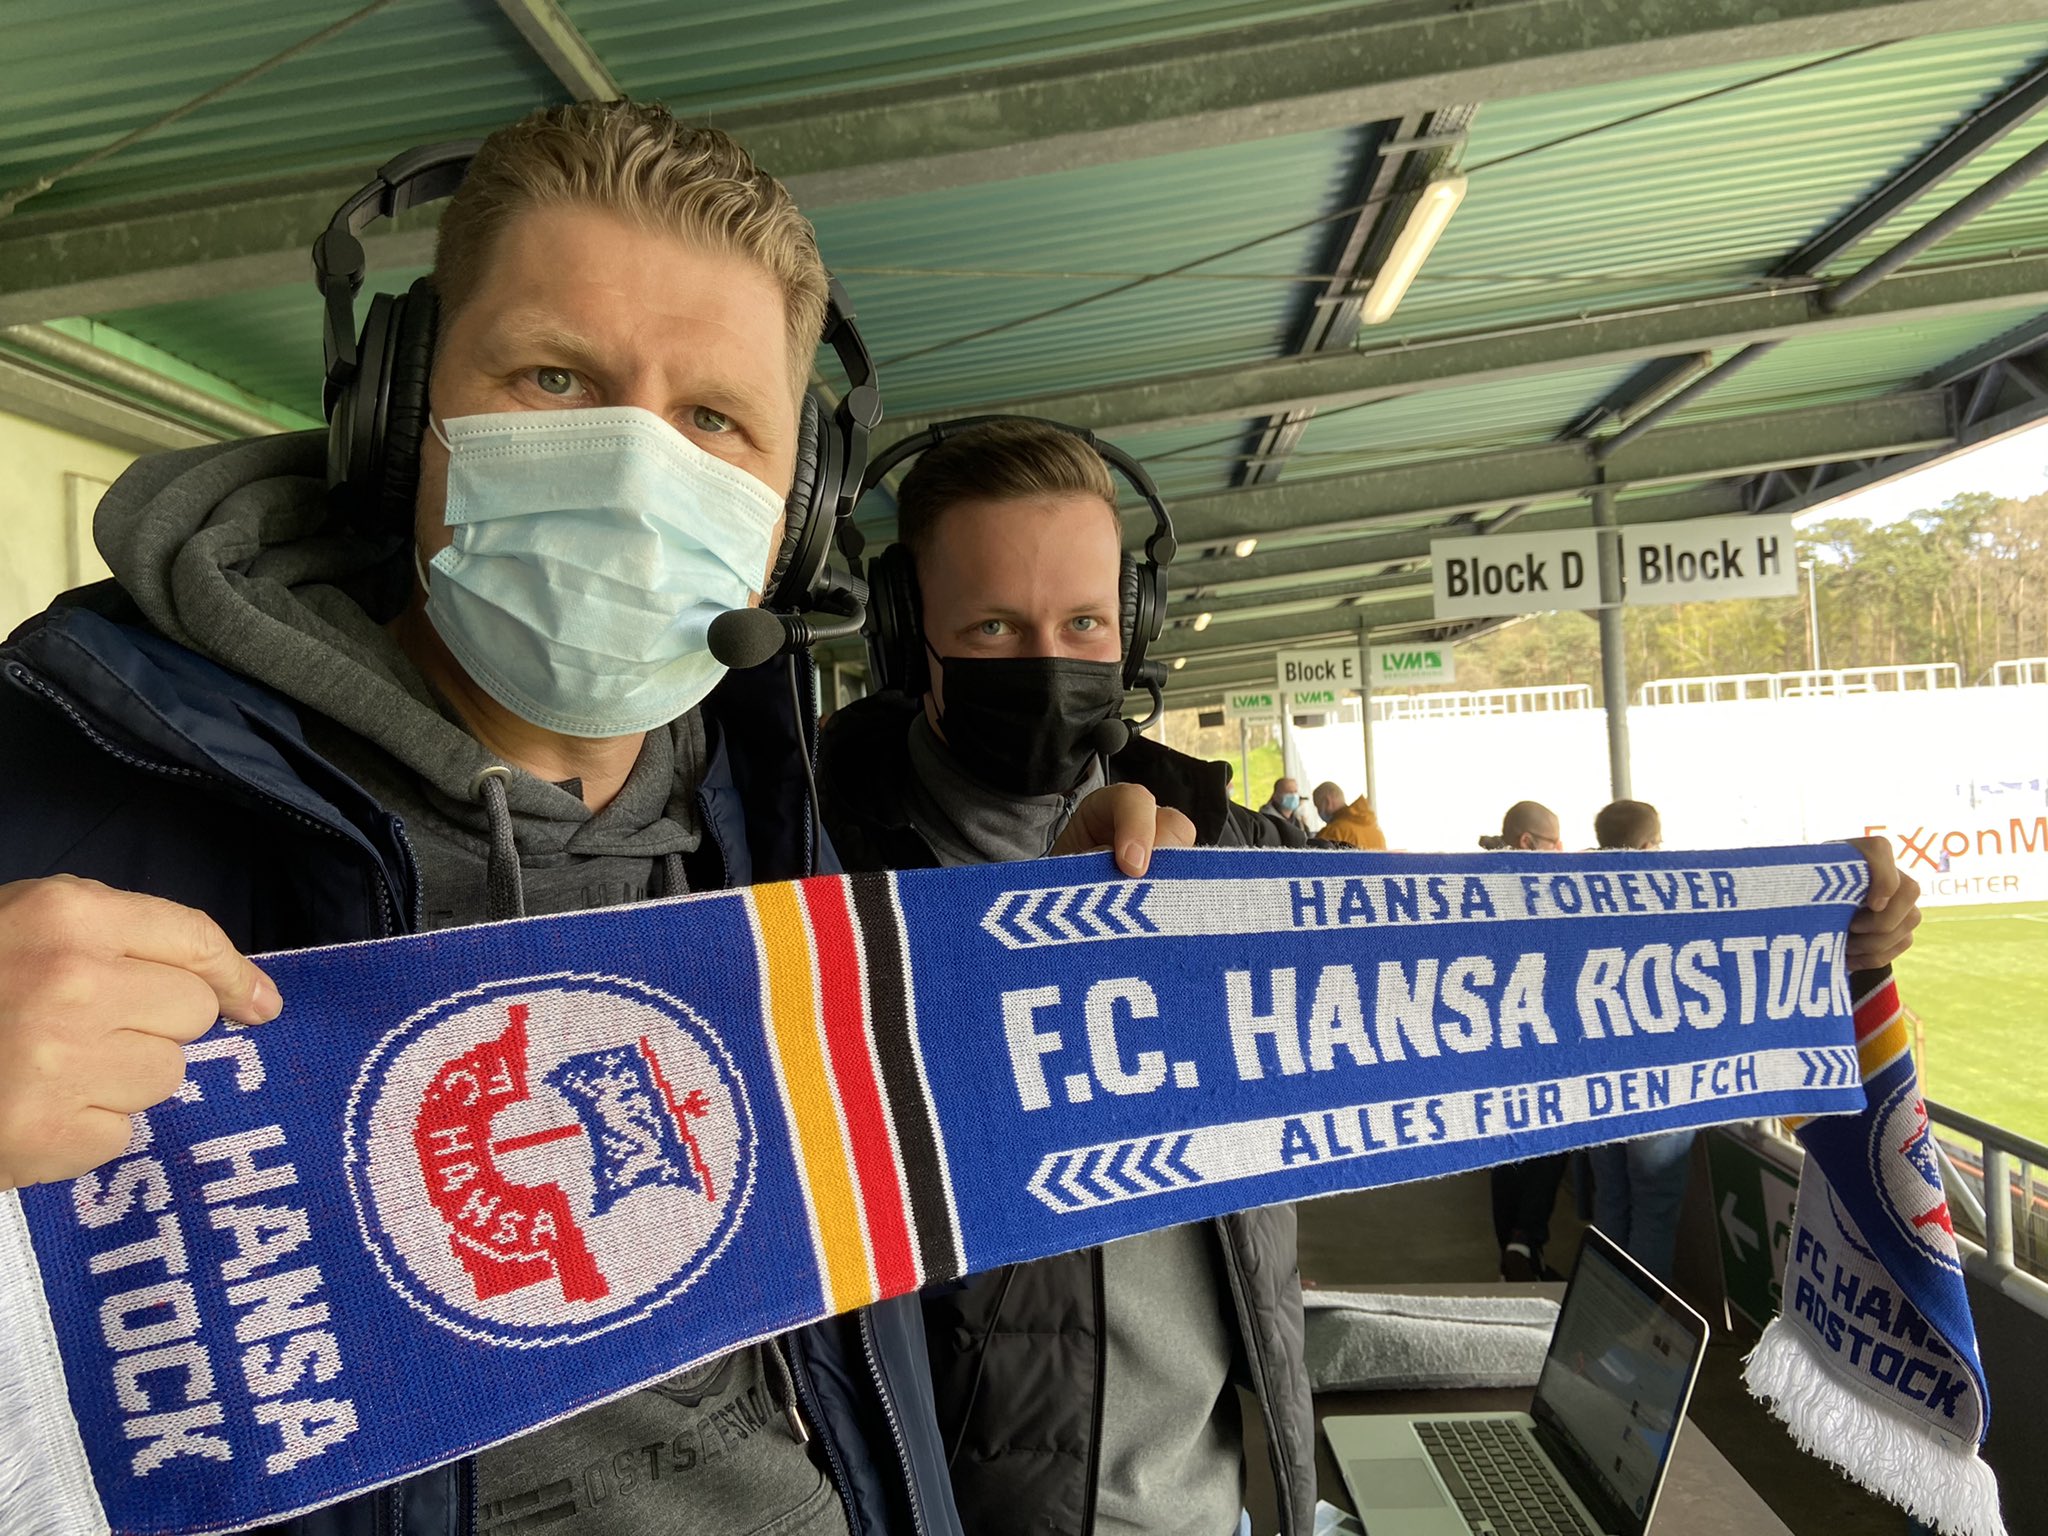 F C Hansa Rostock On Twitter Unser Fanradio Team Ist Bereit Olli Und Paul Gehen Gleich Fur Euch Auf Sendung Also Schaltet Ein Hansa 3liga Svmfch Https T Co 3x9af3zyul